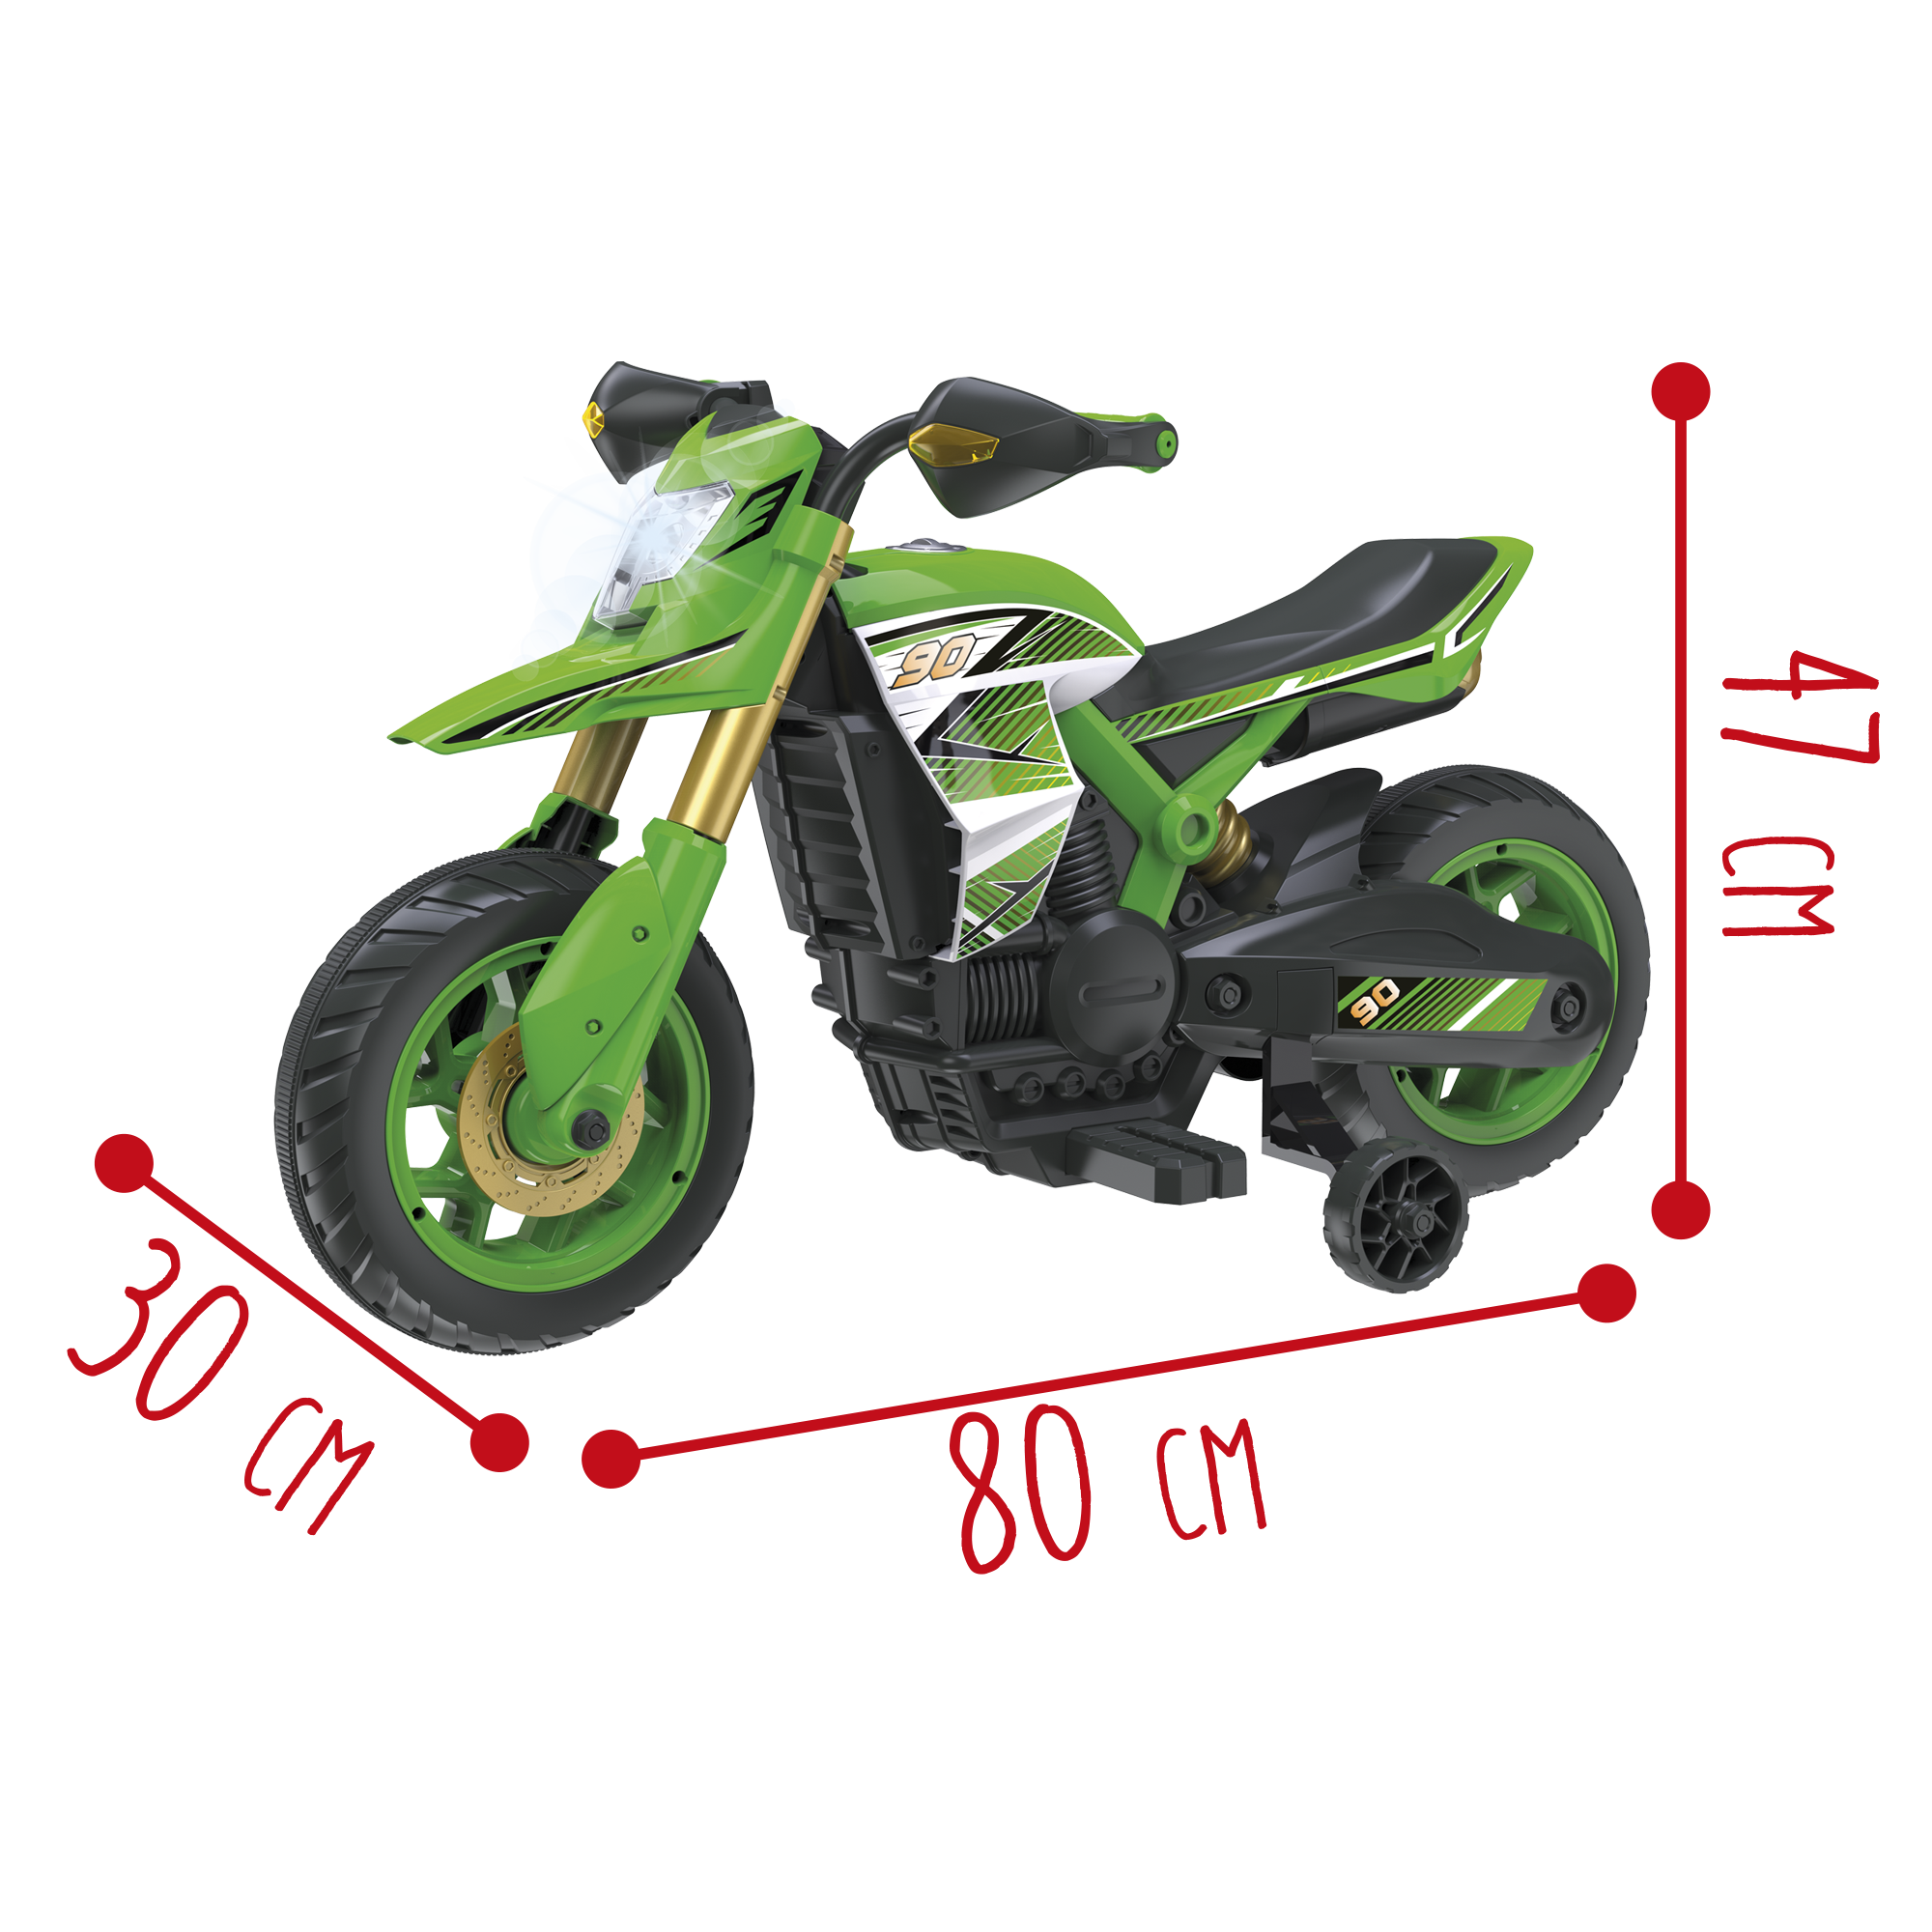 Moto Cross 6v per Bimbi: Fari, Suoni Realistici, Poggiapiedi,  Stabilizzatore e Caricabatteria Inclusi - Adatta a Bambini dai 3 ai 5 Anni  - Toys Center